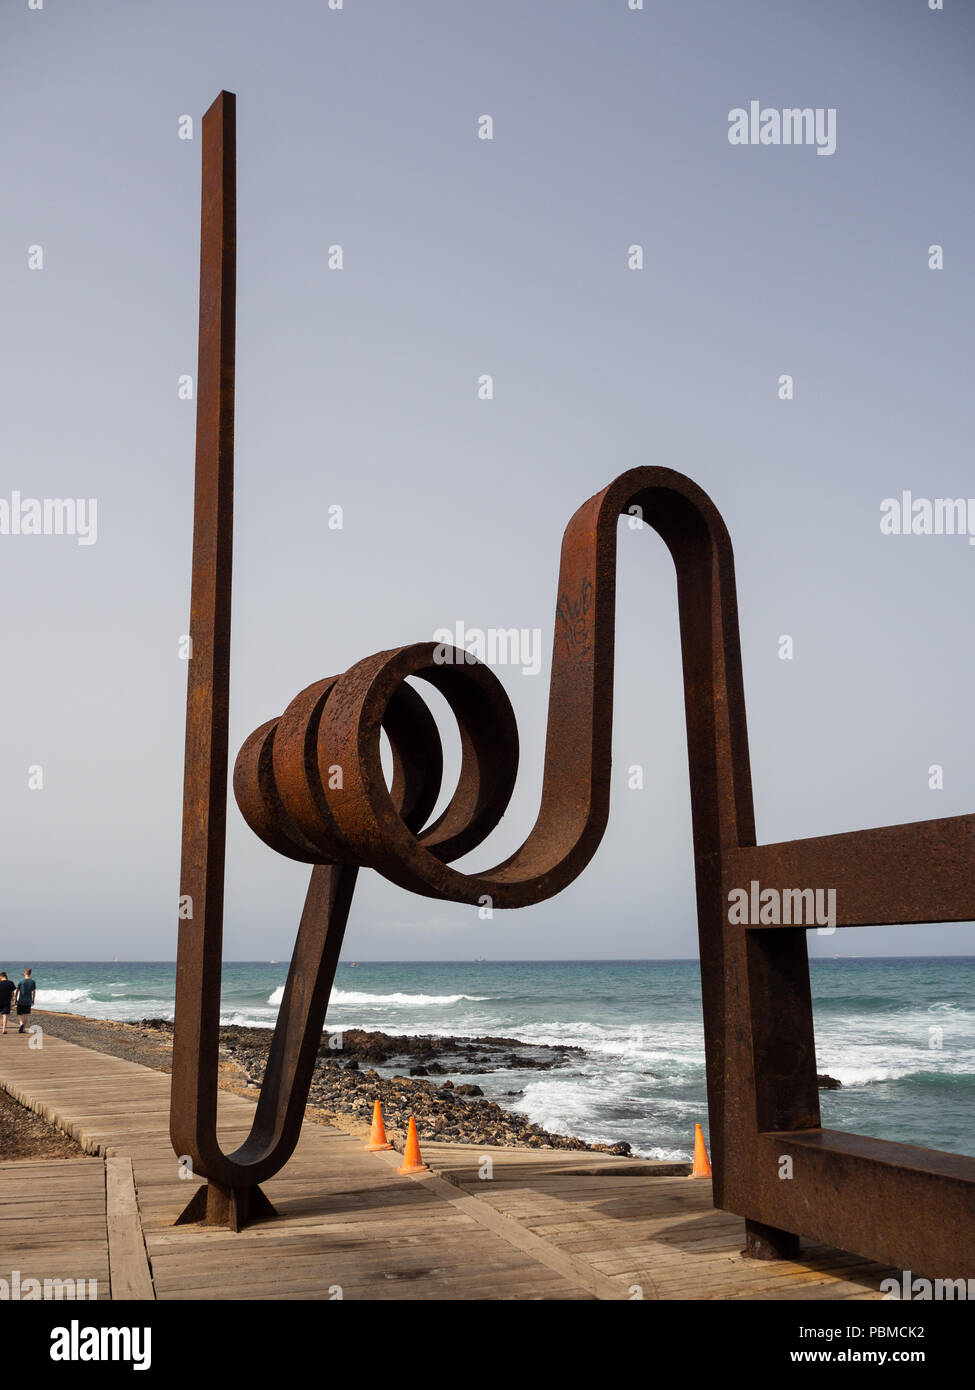 Playa de Las Americas, Tenerife, España - 11 de julio, 2018: la gente  descansando o pasando por la escultura de hierro modernista, obra de metal  por el artista J.L. Salvad Fotografía de stock - Alamy